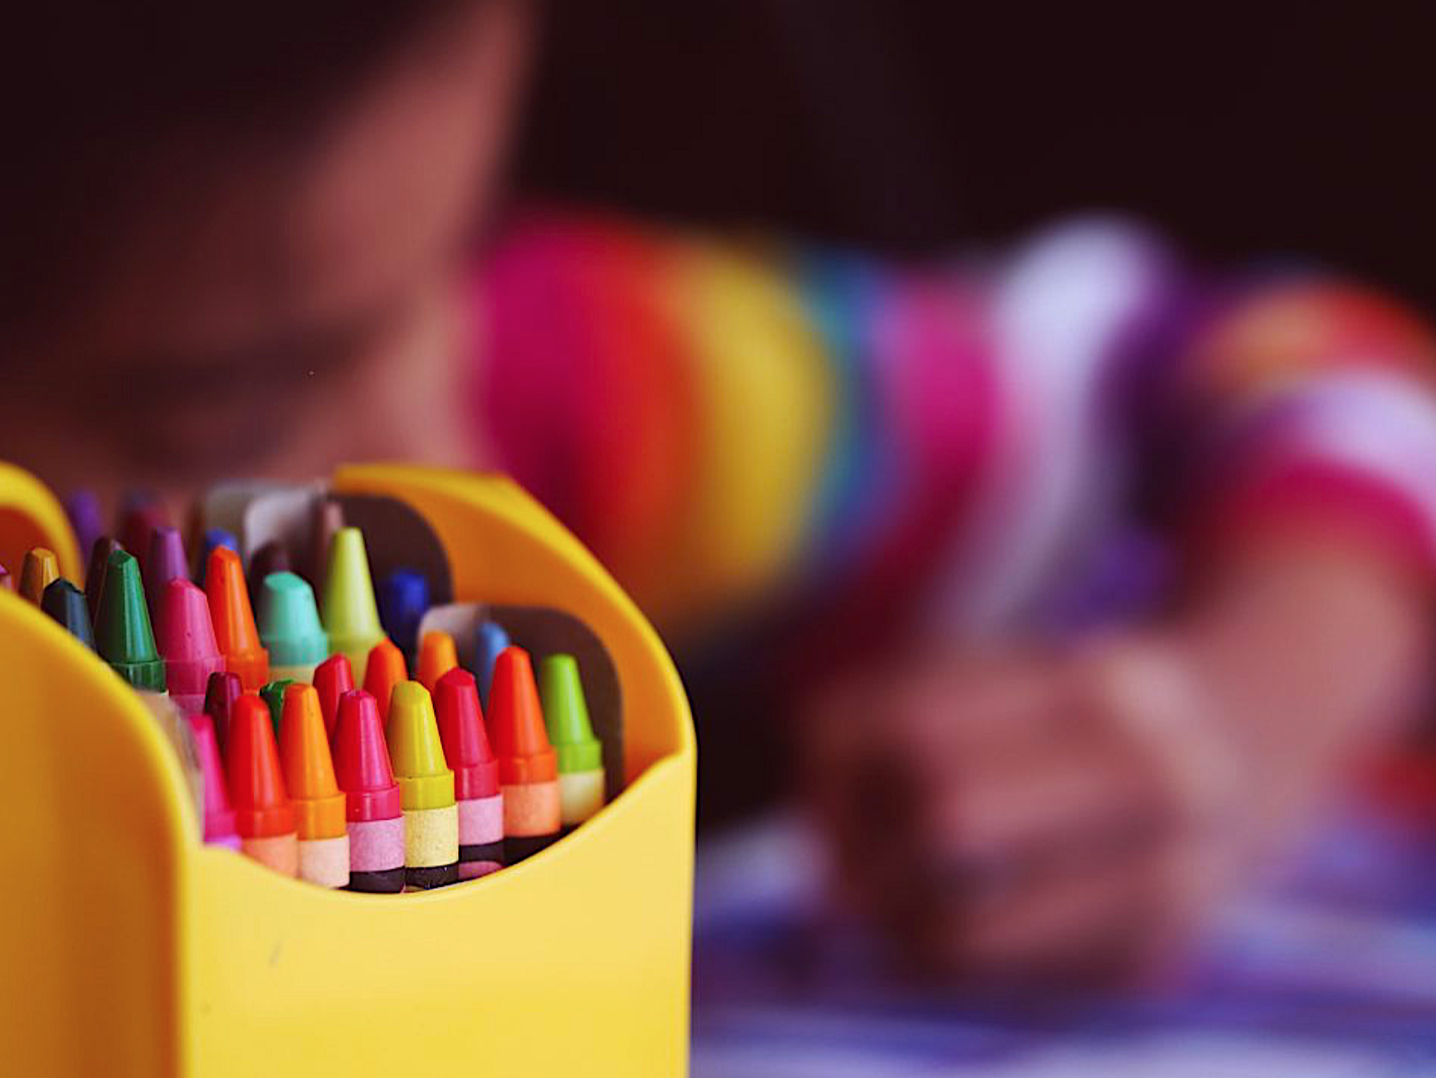 Enfant et crayons - Mon enfant choisit des couleurs bizarres